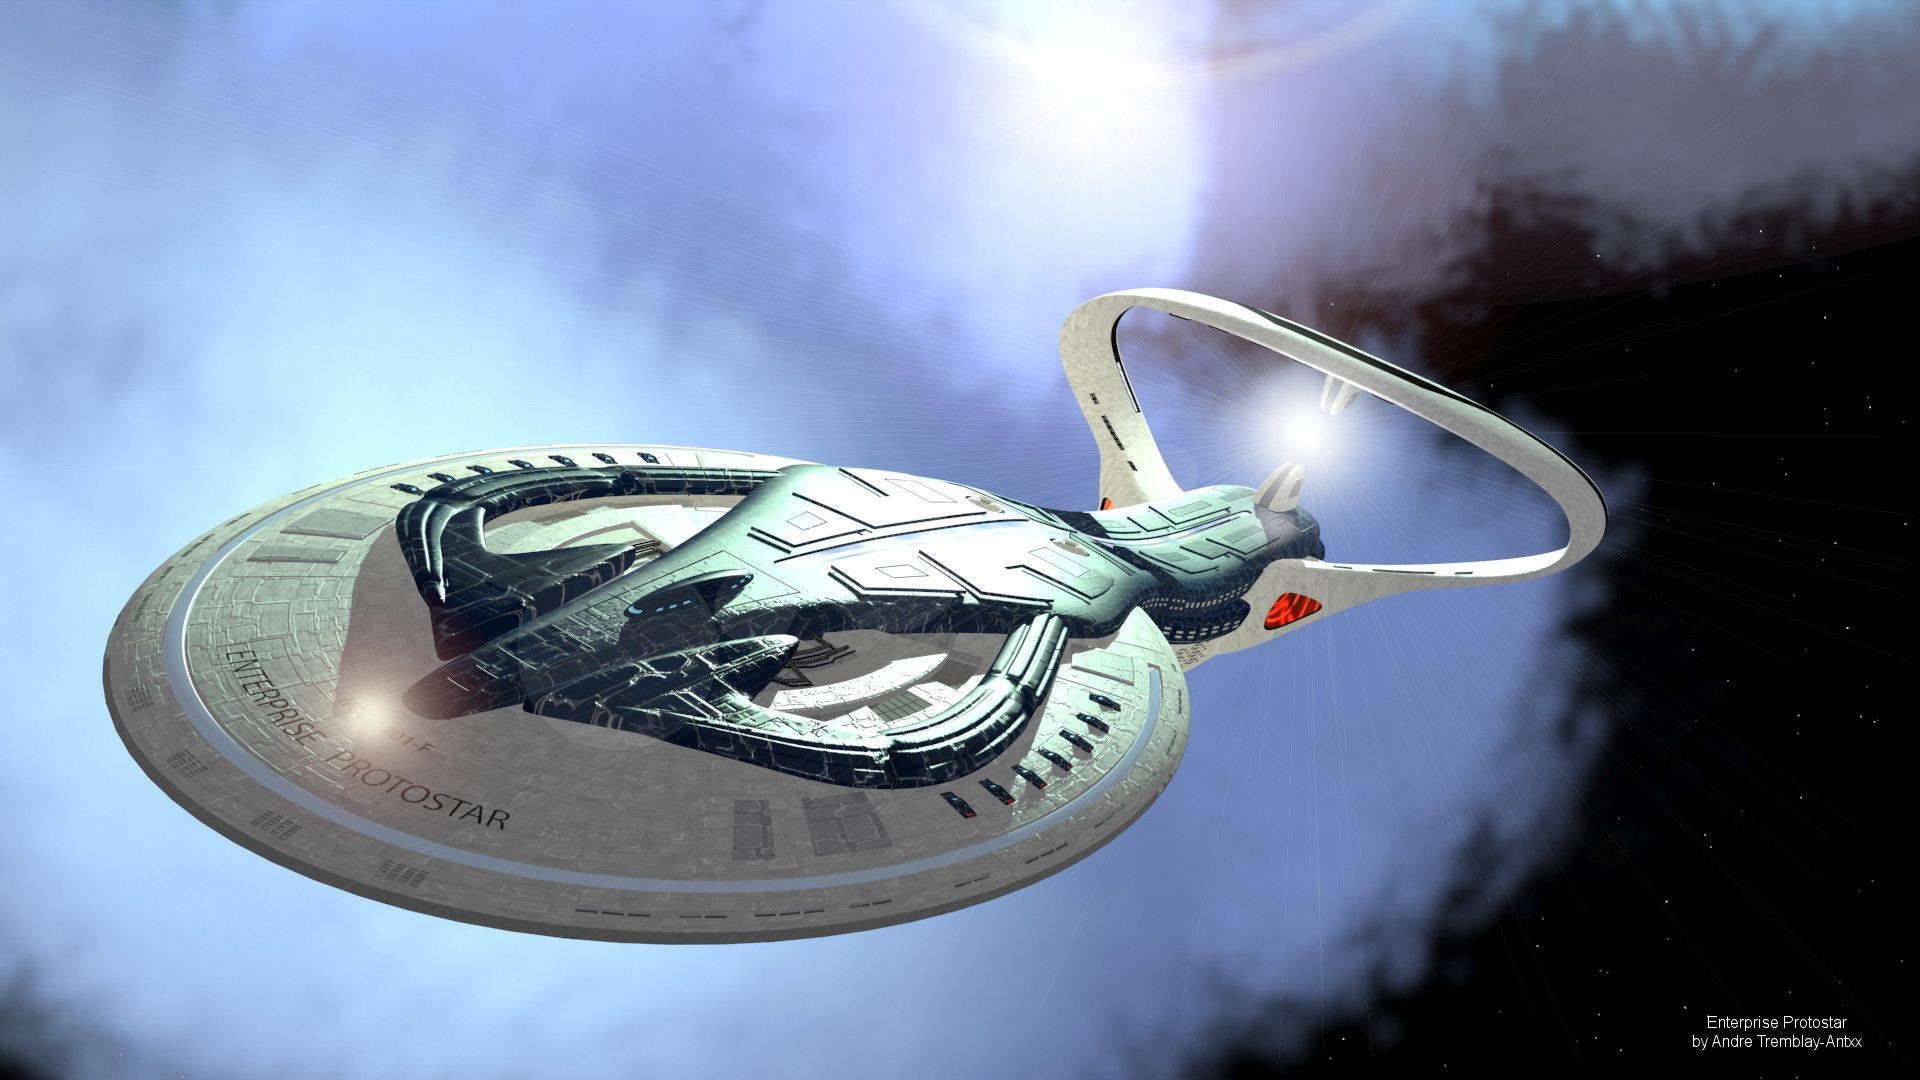 Star Trek Enterprise Protostar Wallpapers – 3dDub